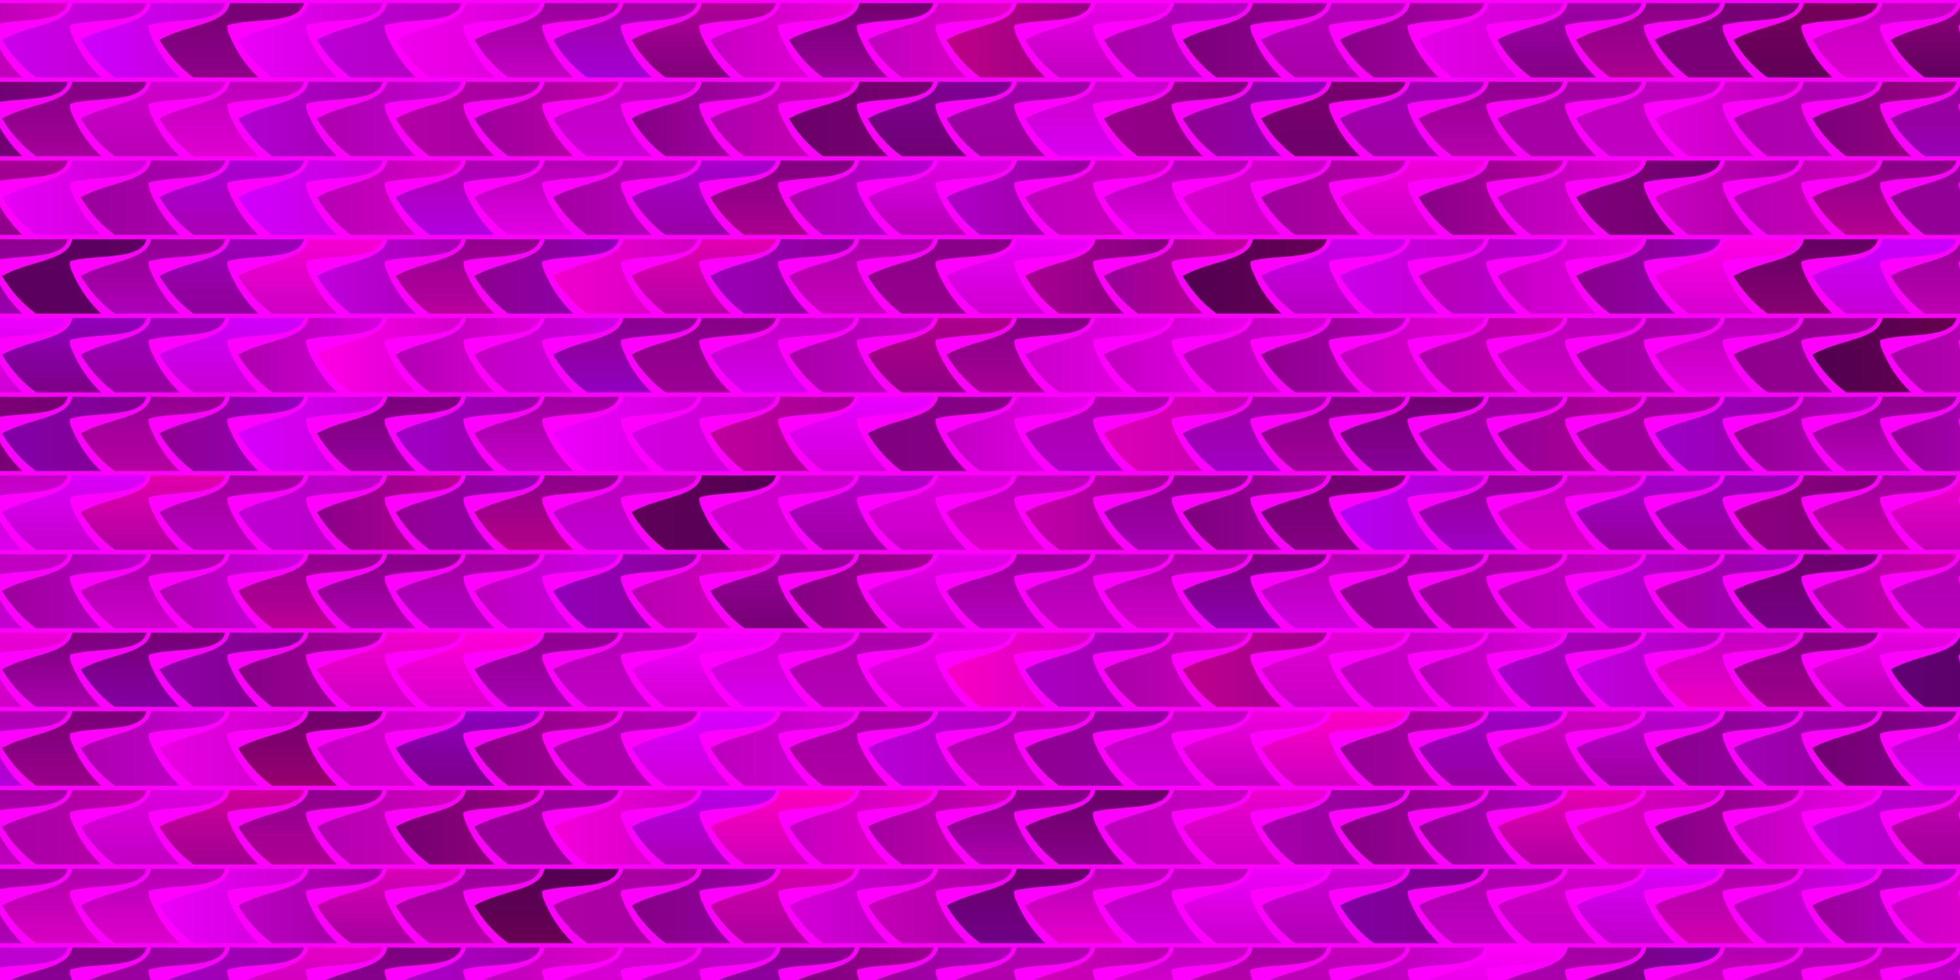 plantilla de vector de color púrpura claro con rectángulos.